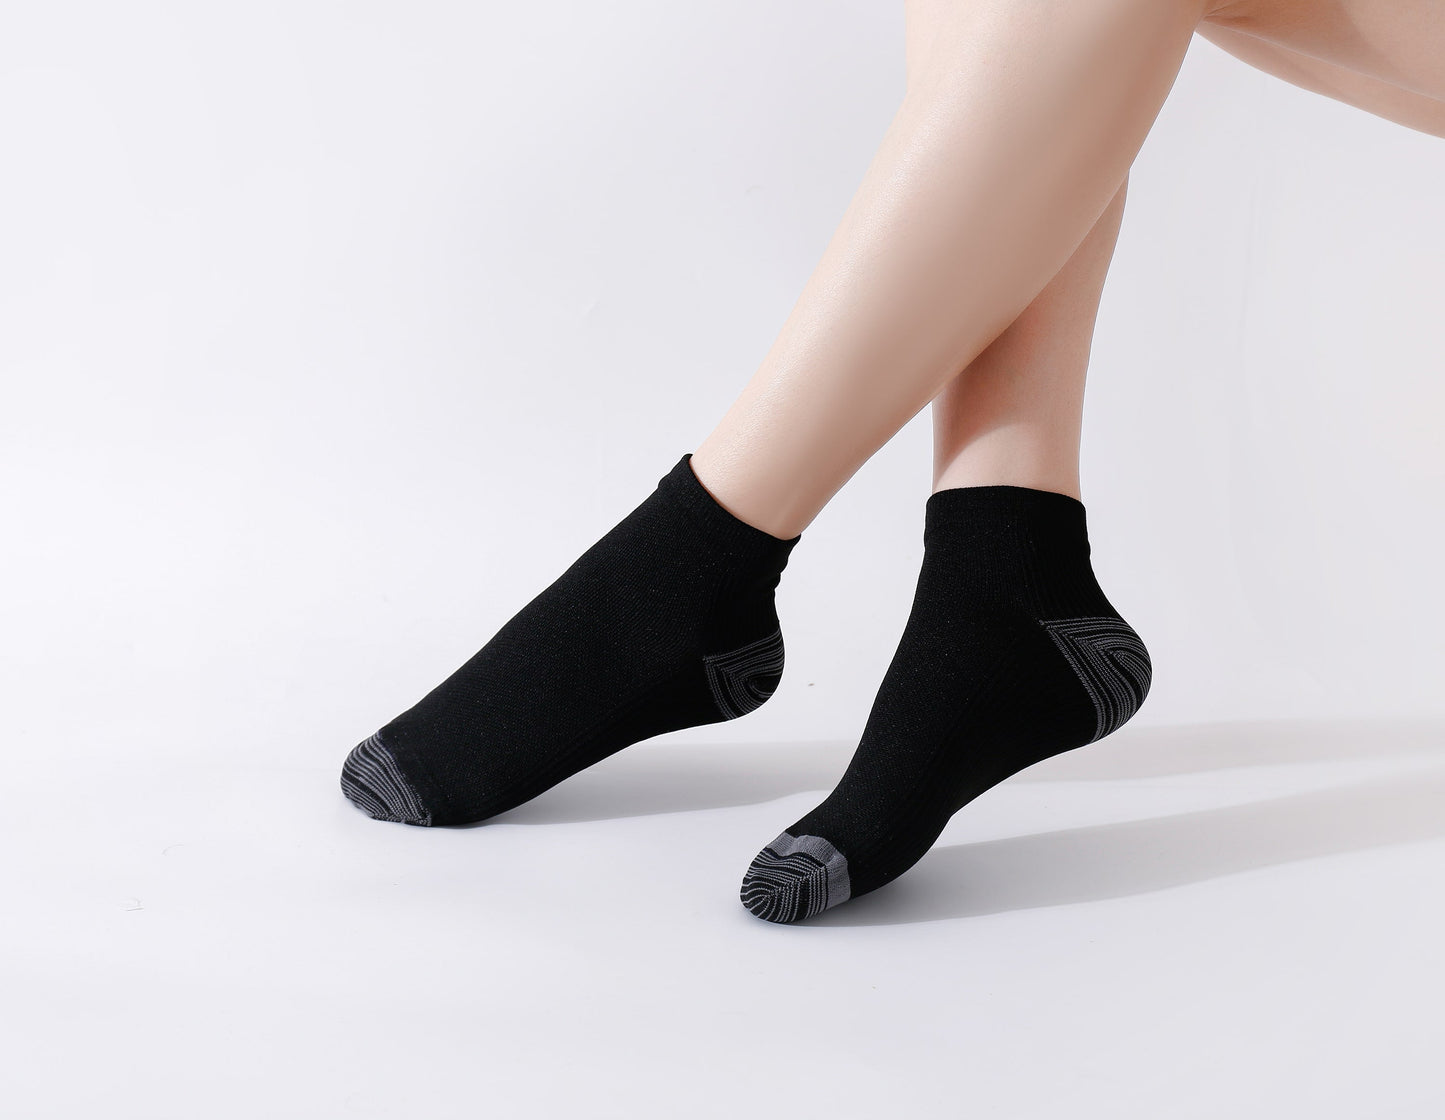 Aktiv Socken Damen: Medizinische Kompressionssocken für Laufen, kurz und effektiv gegen Venenprobleme. Laufsocken Kompression & Kompressionssöckchen in einem!